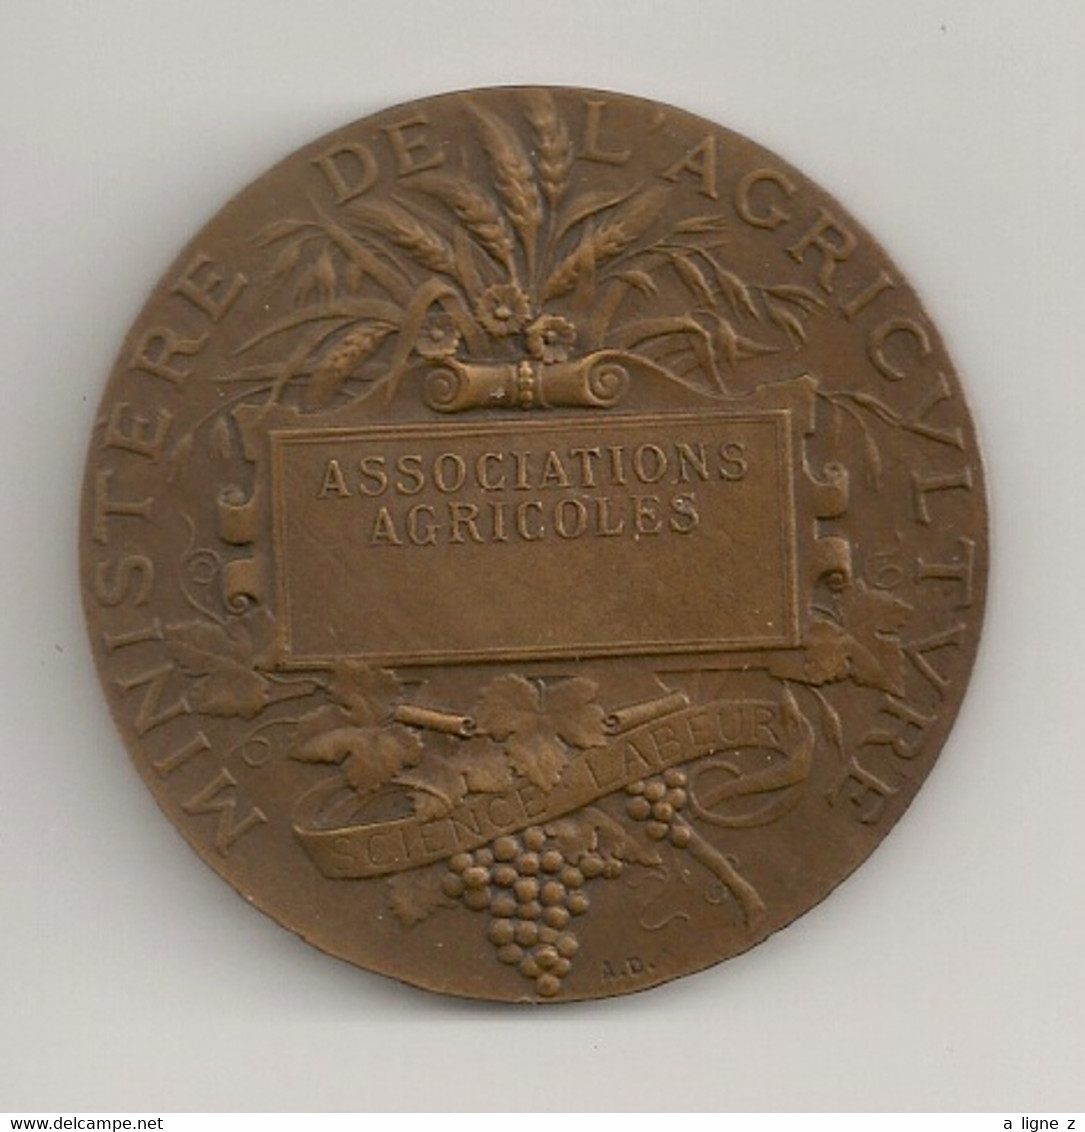 Ref KDK : Médaille Bronze 50 Mm Ministère De L'agriculture Avec écrin Associations Agricoles - Professionnels / De Société